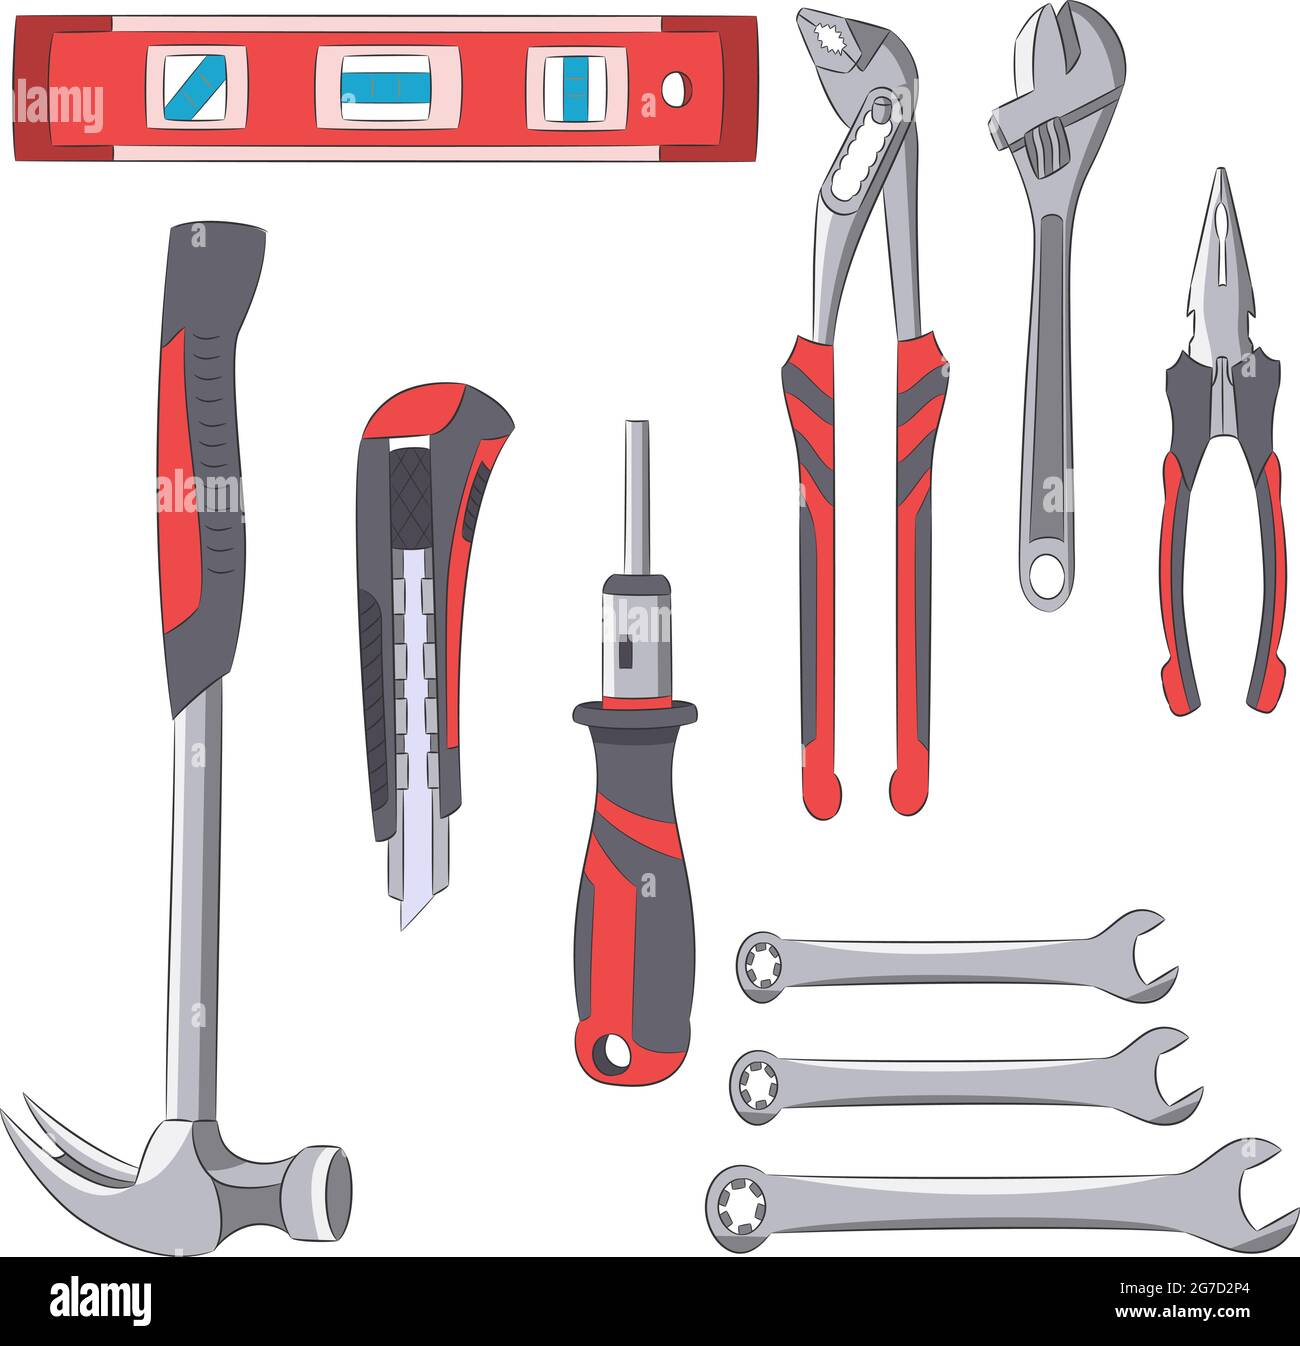 Una serie di utensili per lavori idraulici isolati su sfondo bianco. Illustrazione vettoriale. Illustrazione Vettoriale